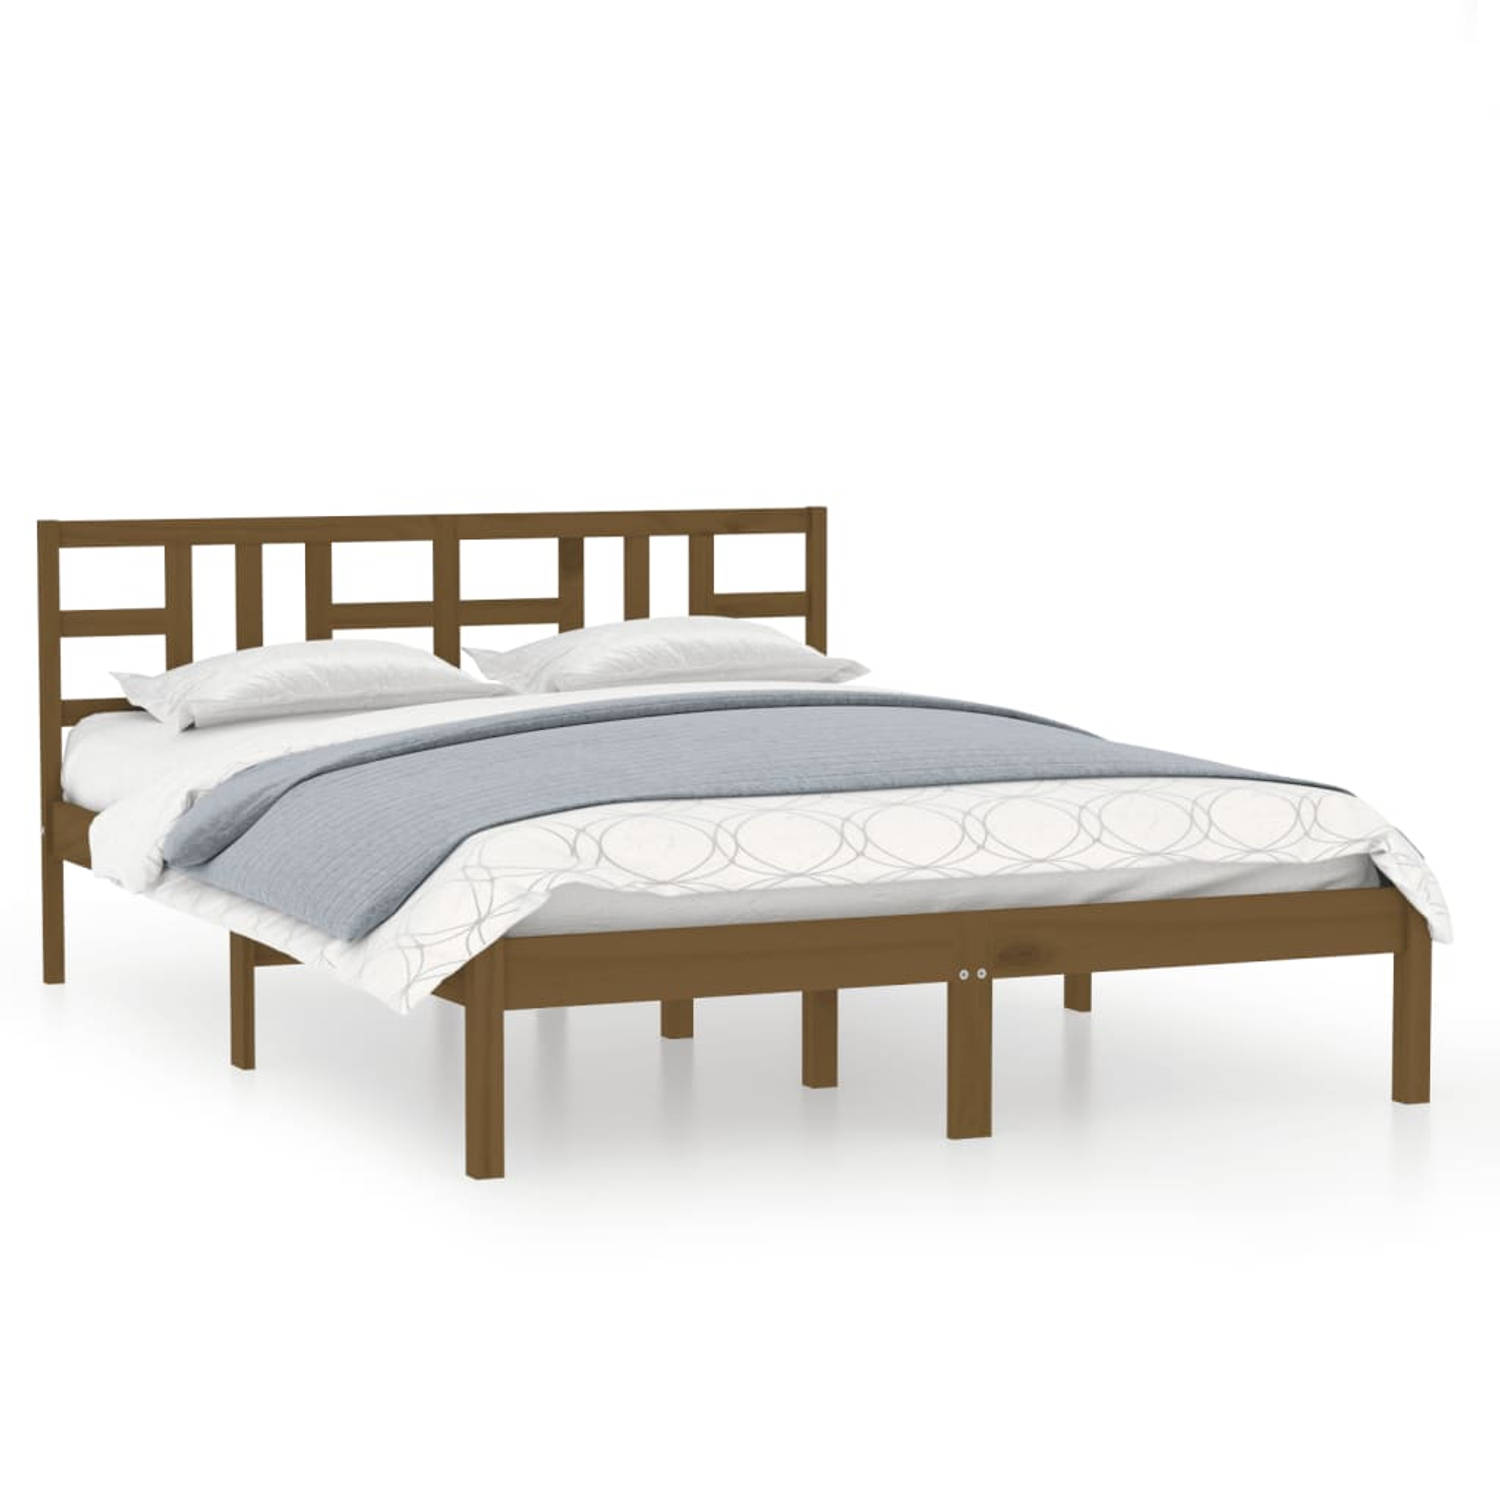 The Living Store Bedframe massief hout honingbruin 200x200 cm - Bedframe - Bedframes - Tweepersoonsbed - Bed - Bedombouw - Dubbel Bed - Frame - Bed Frame - Ledikant - Houten Bedfra